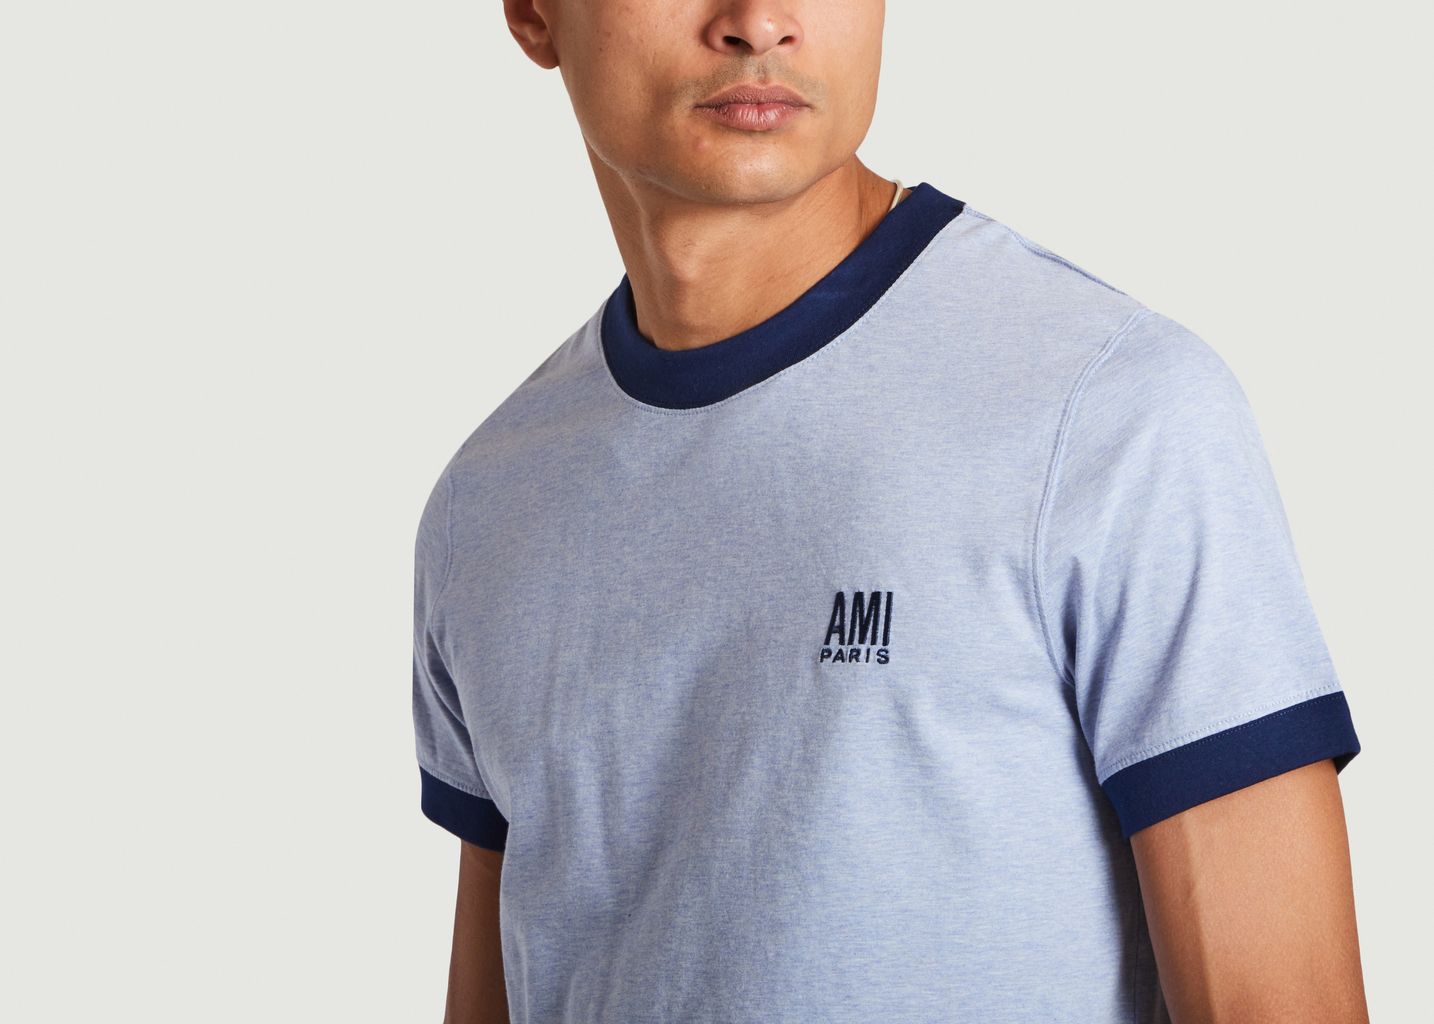 Ami Paris t-shirt made of organic cotton jersey - AMI Paris